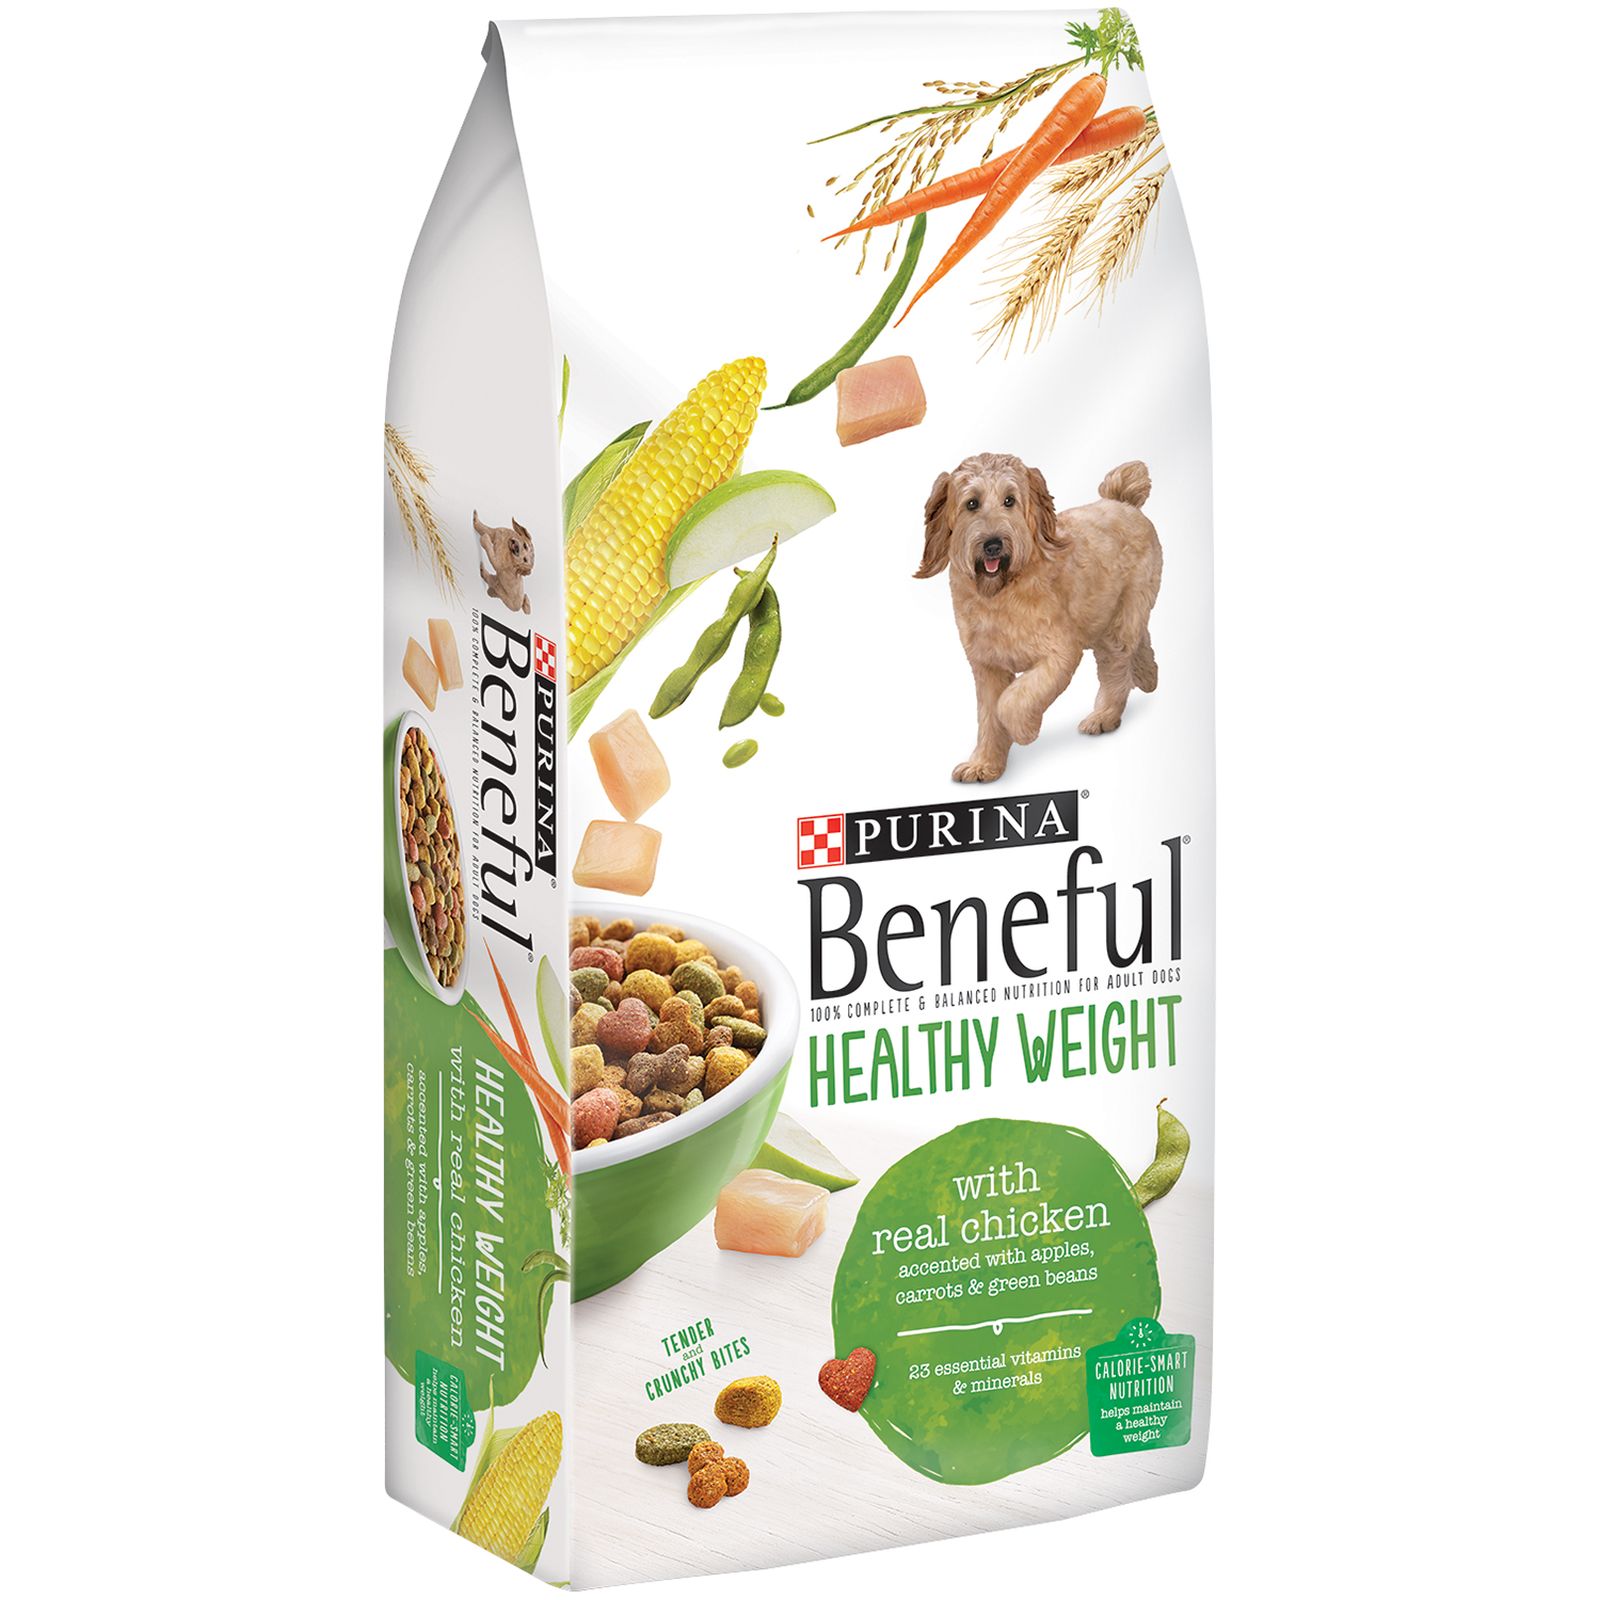 Beneful Healthy Weight Dog Food 31.1 lb. Bag